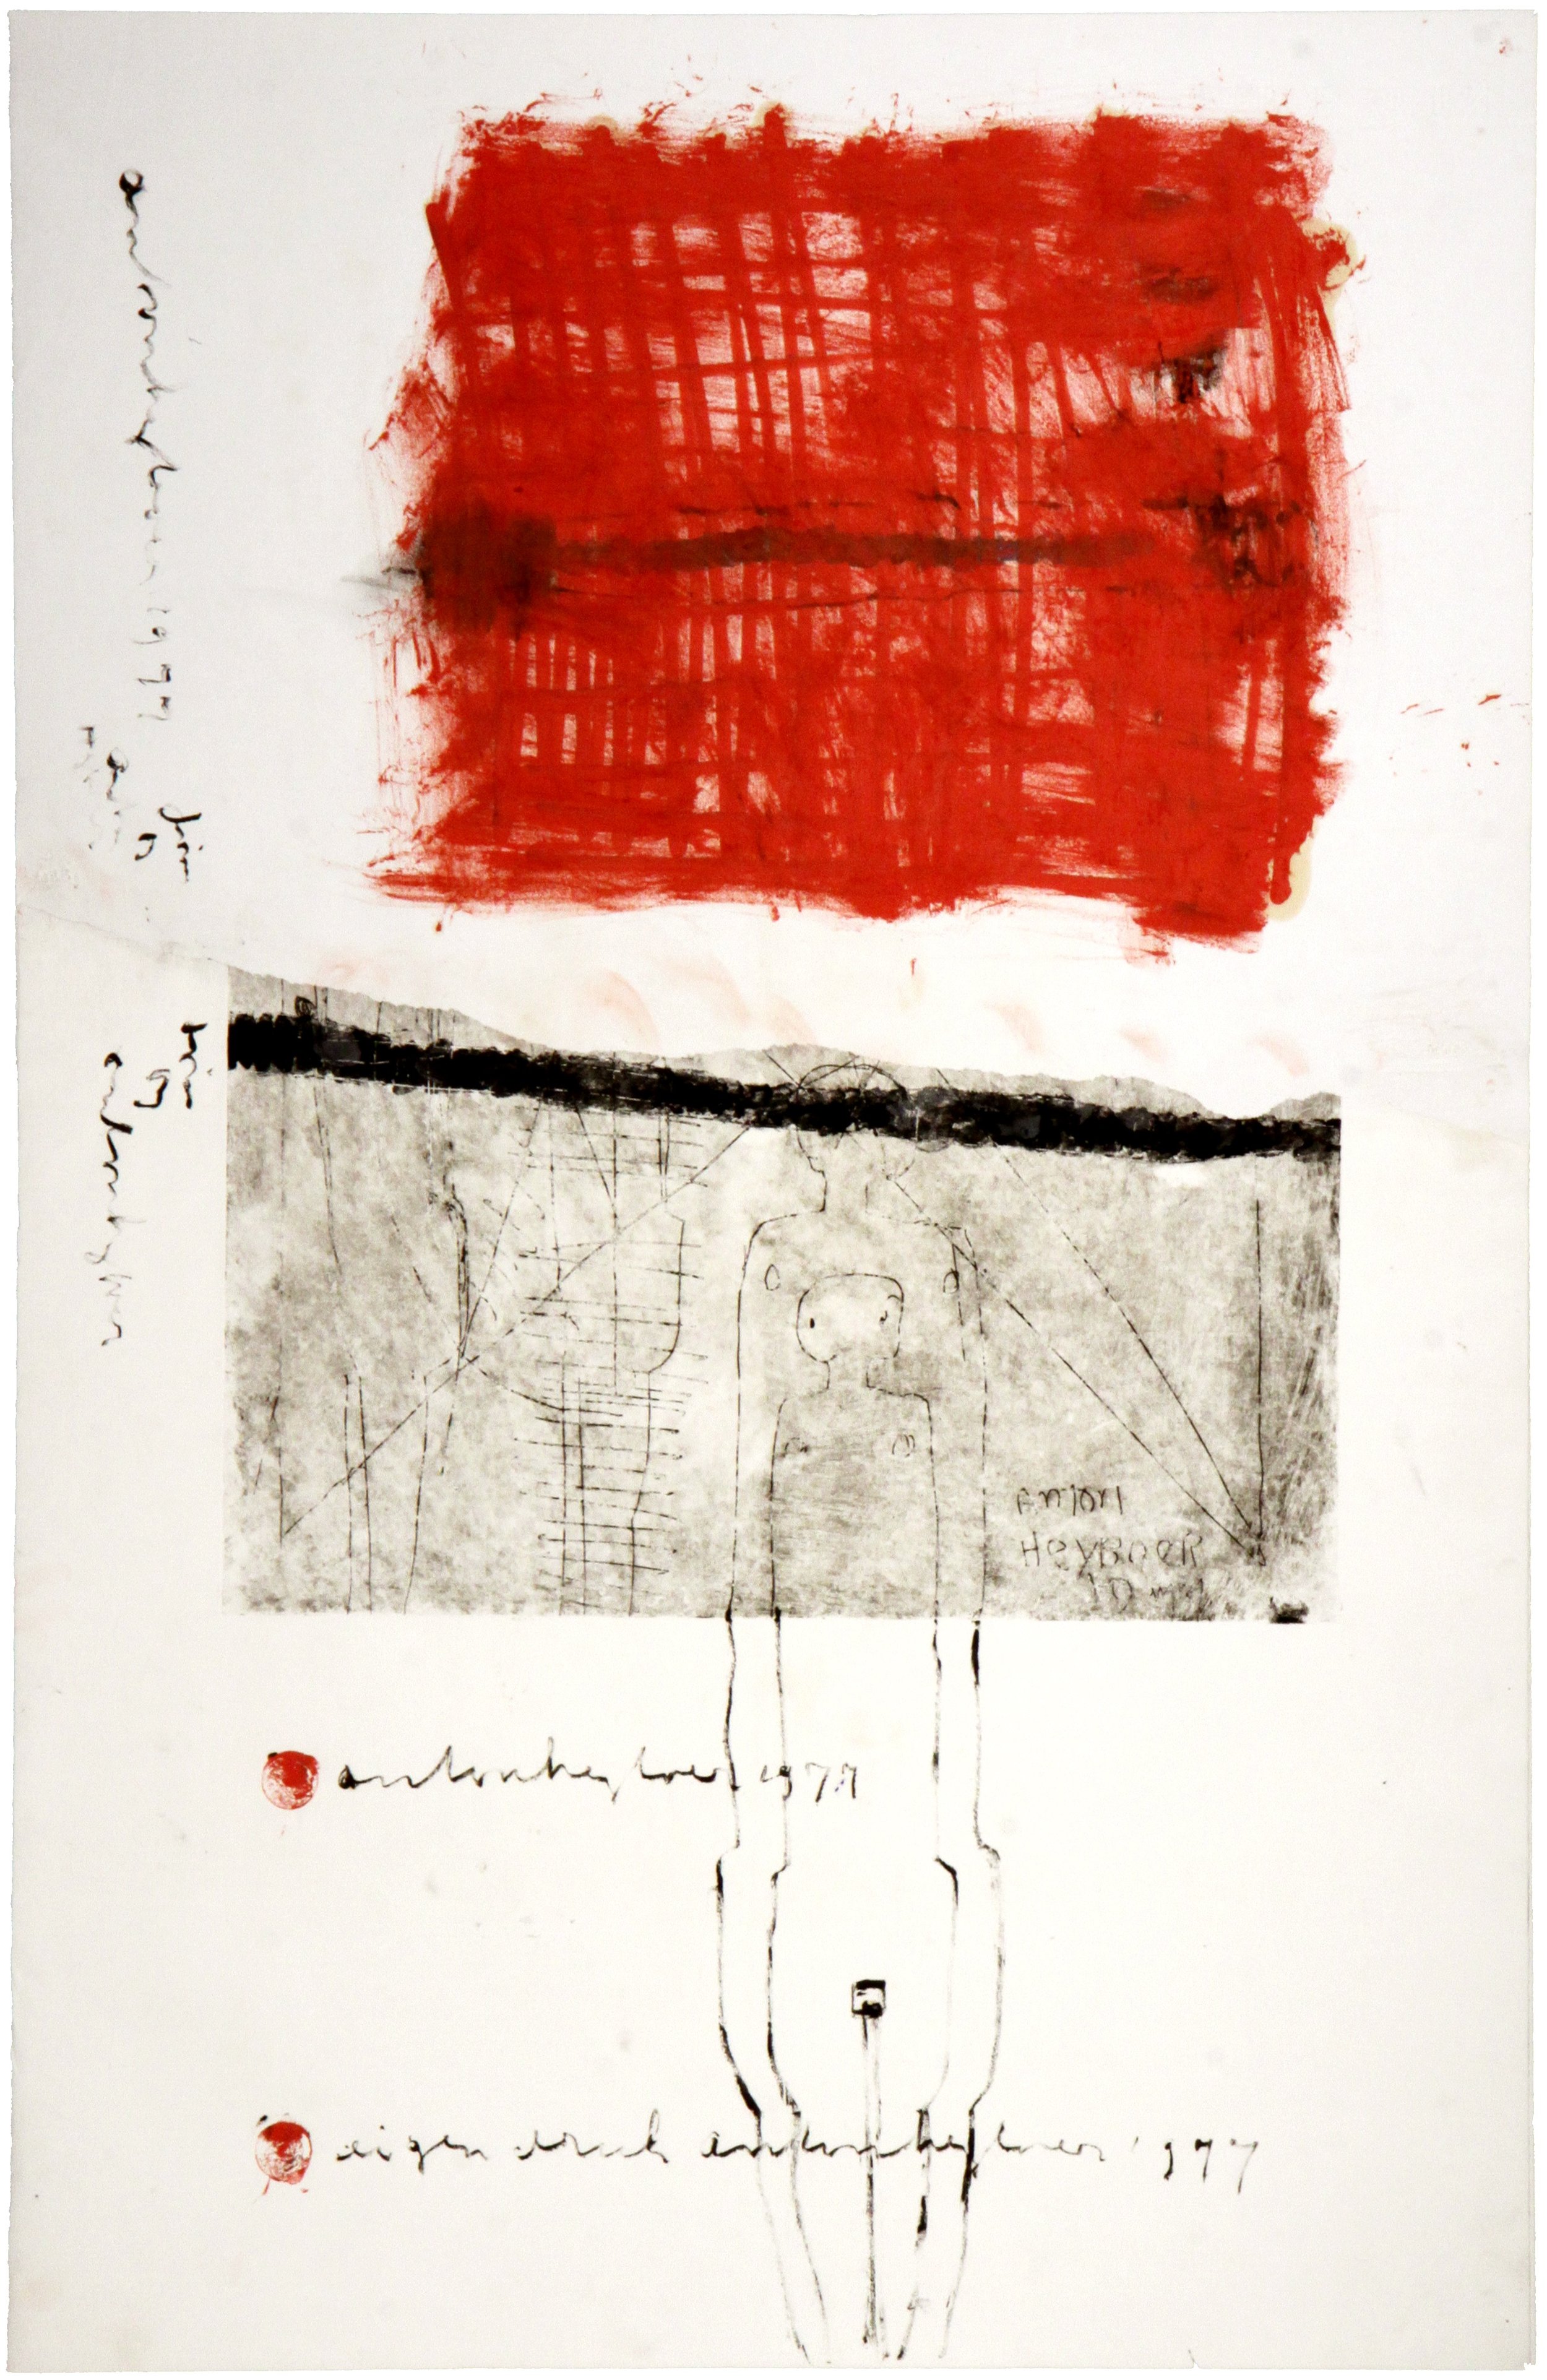 Anton Heyboer, Unity, 1977, Ets-collage op papier, 65 x 100 cm, collectie kunstenaar